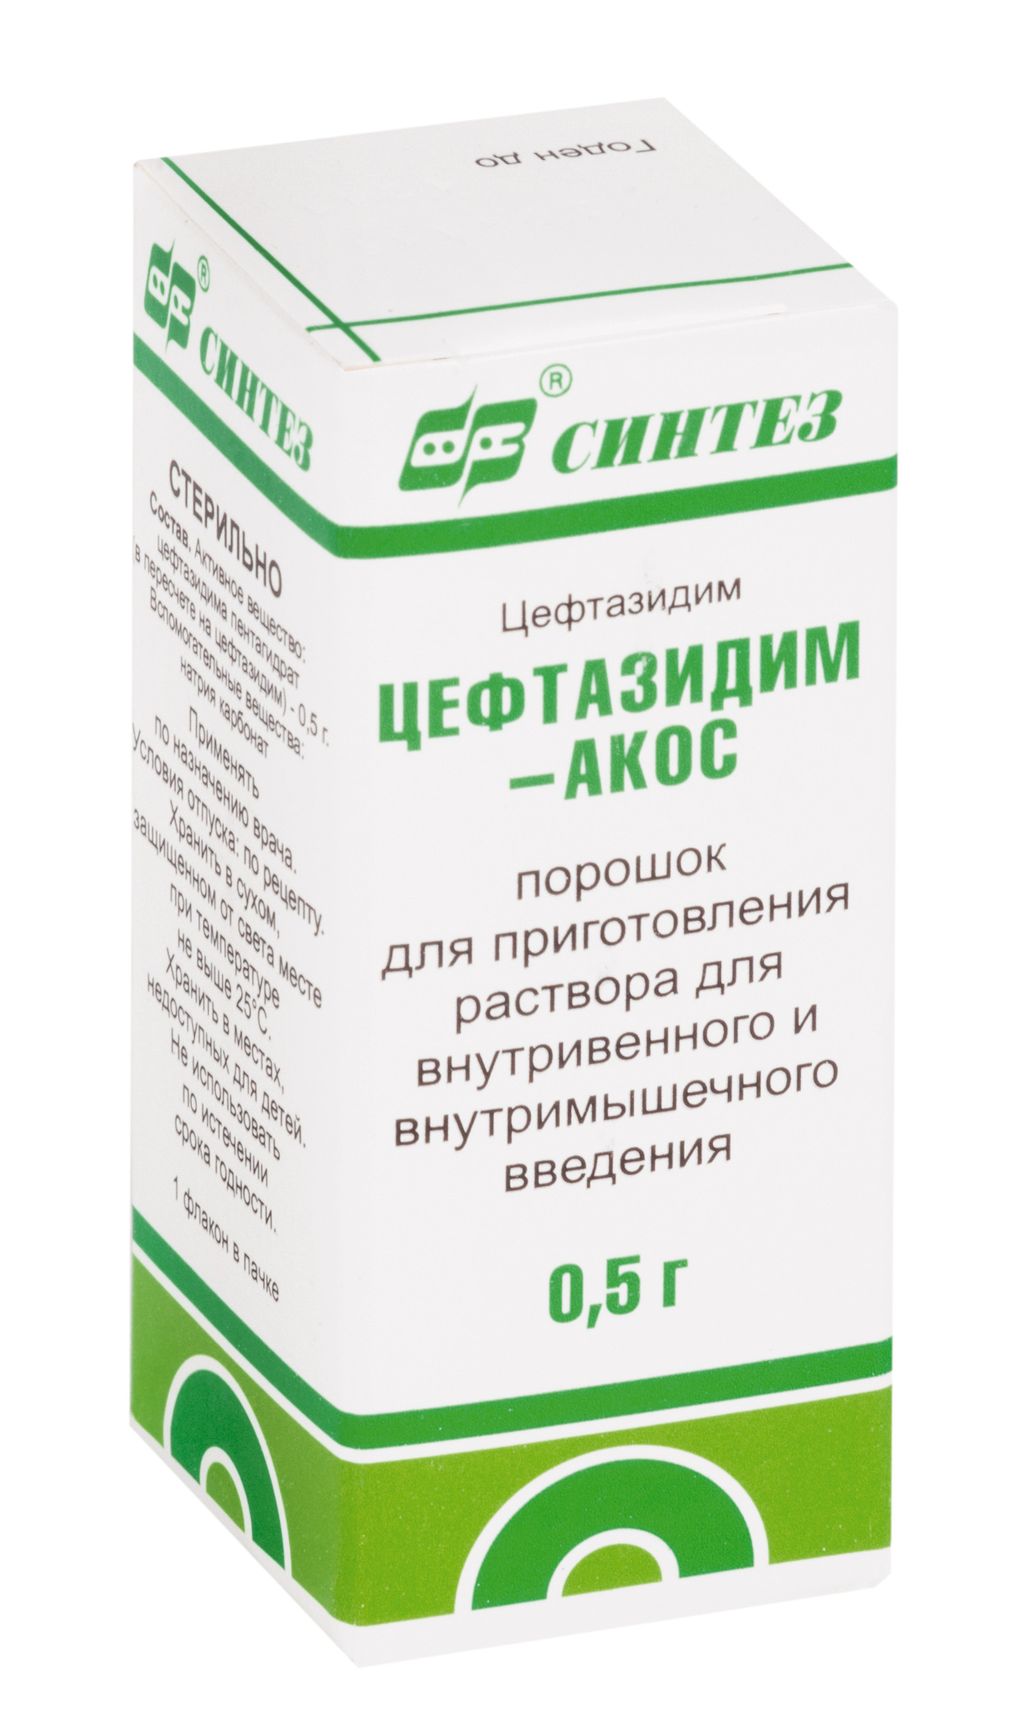 Цефтазидим-АКОС, 0.5 г, порошок для приготовления раствора для внутривенного и внутримышечного введ